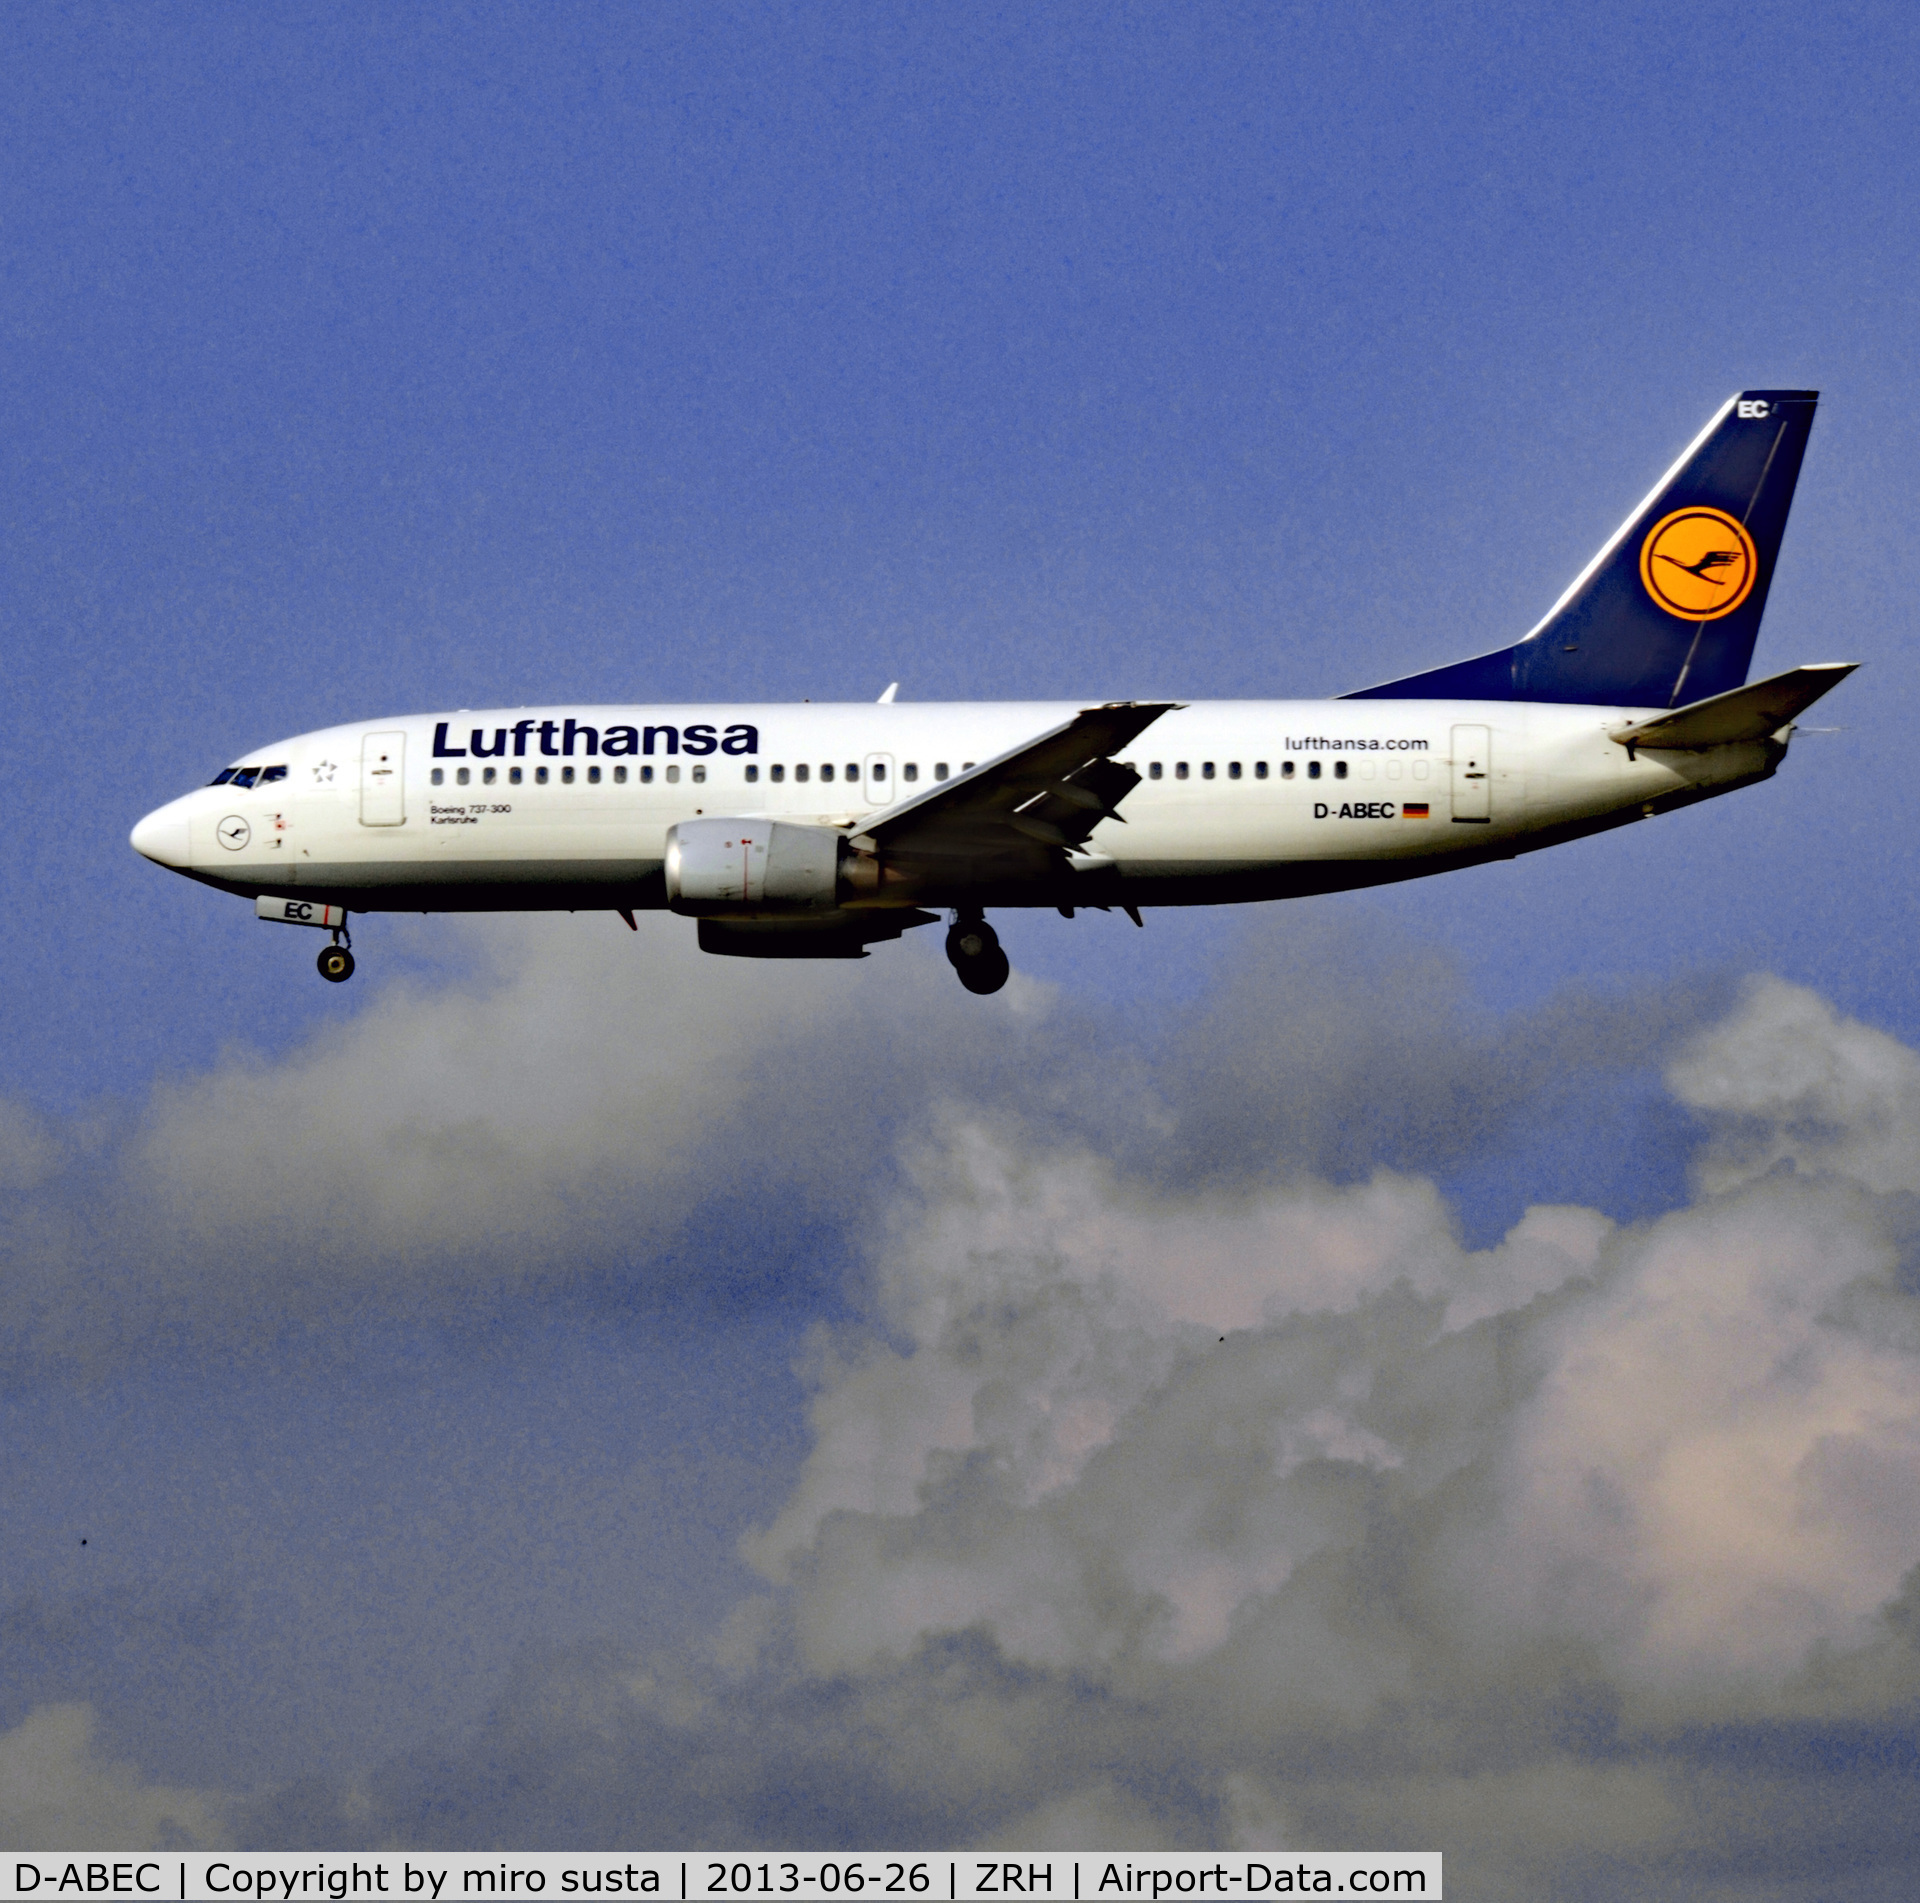 D-ABEC, 1991 Boeing 737-330 C/N 25149, Lufthansa Airlines Boeing 737-330 landing at Zurich-Kloten International Airport